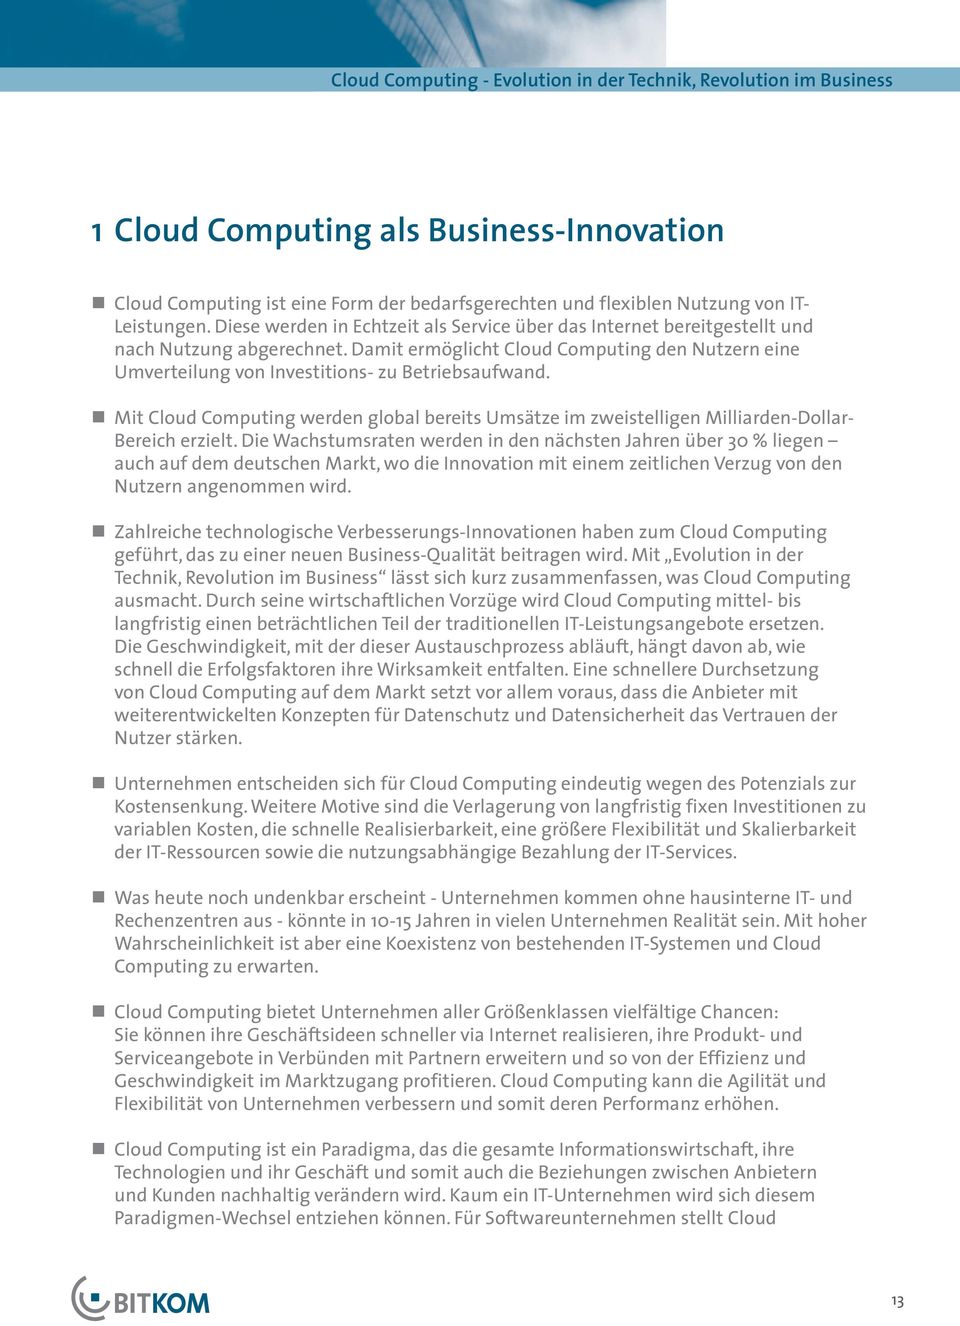 Damit ermöglicht Cloud Computing den Nutzern eine Umverteilung von Investitions- zu Betriebsaufwand.